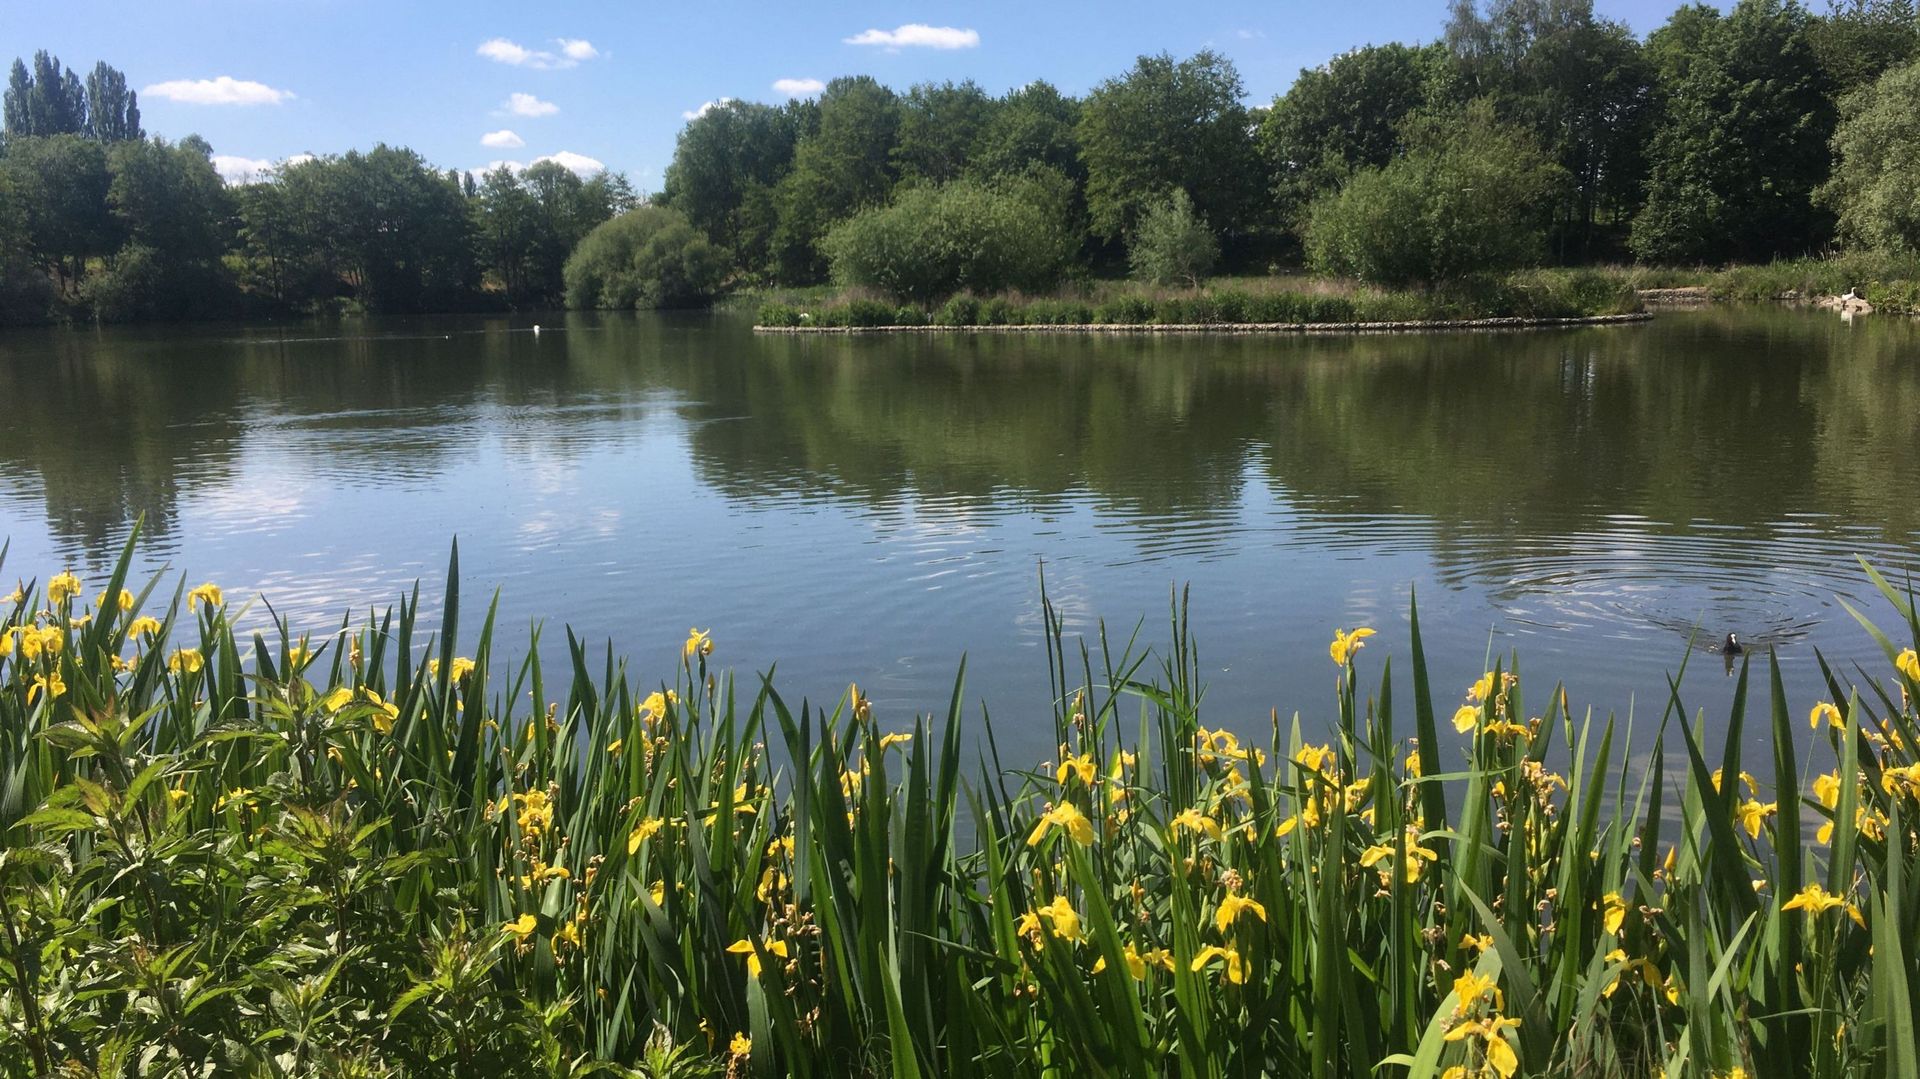 Le parc et les étangs de la Pede: un site naturel protégé du quartier de Neerpede à Anderlecht, il tient son nom du ruisseau la Pede ou Neerpedebeek qui le traverse.  